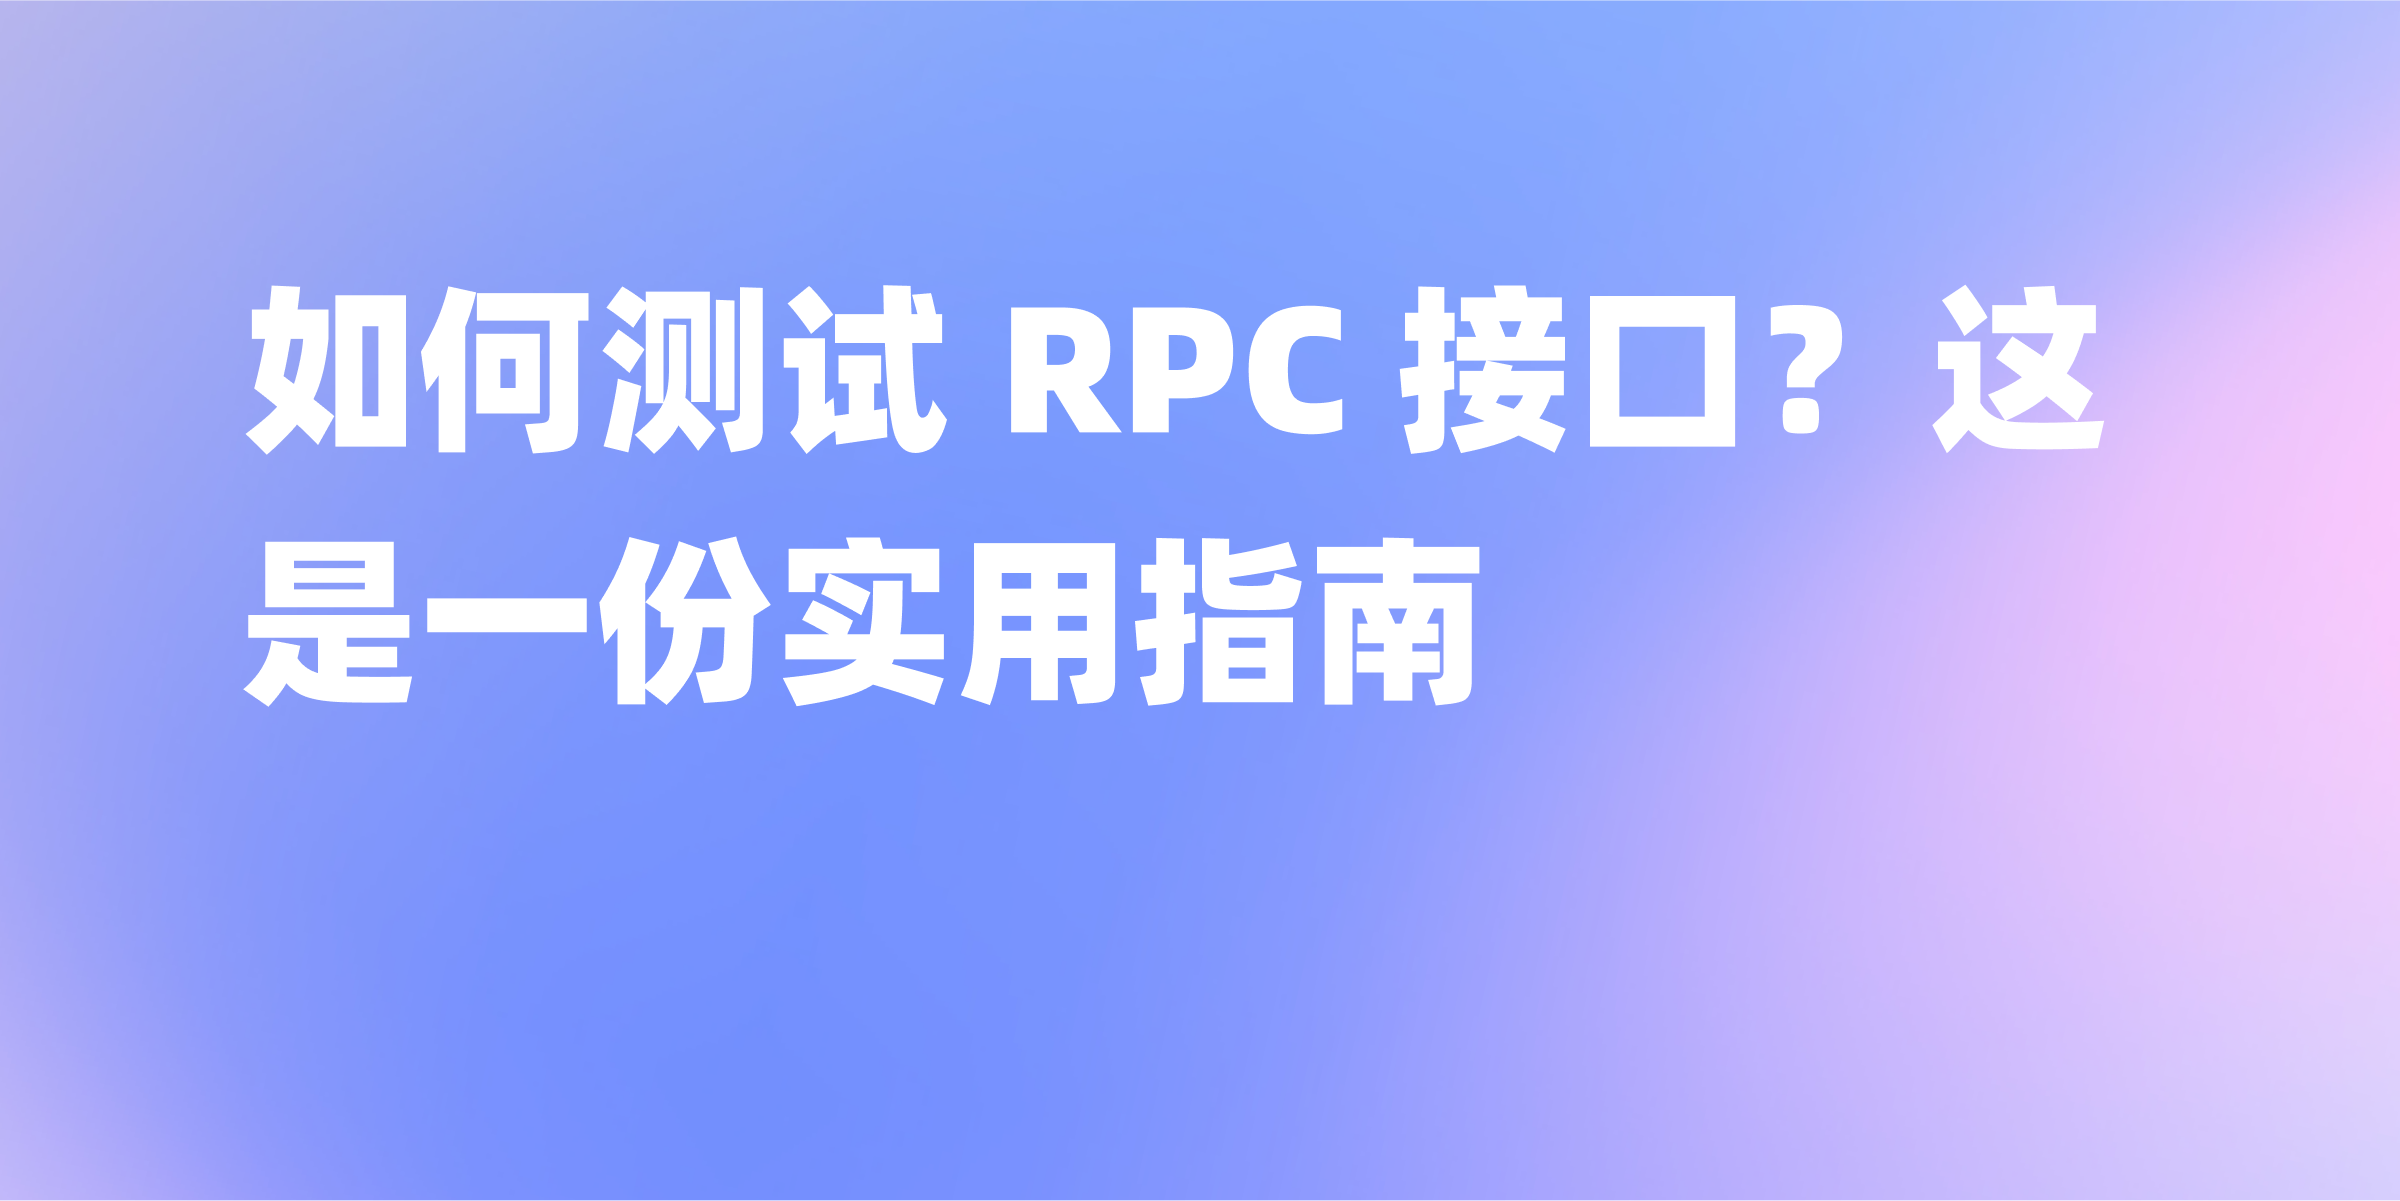 RPC 接口测试指南：如何高效测试你的接口